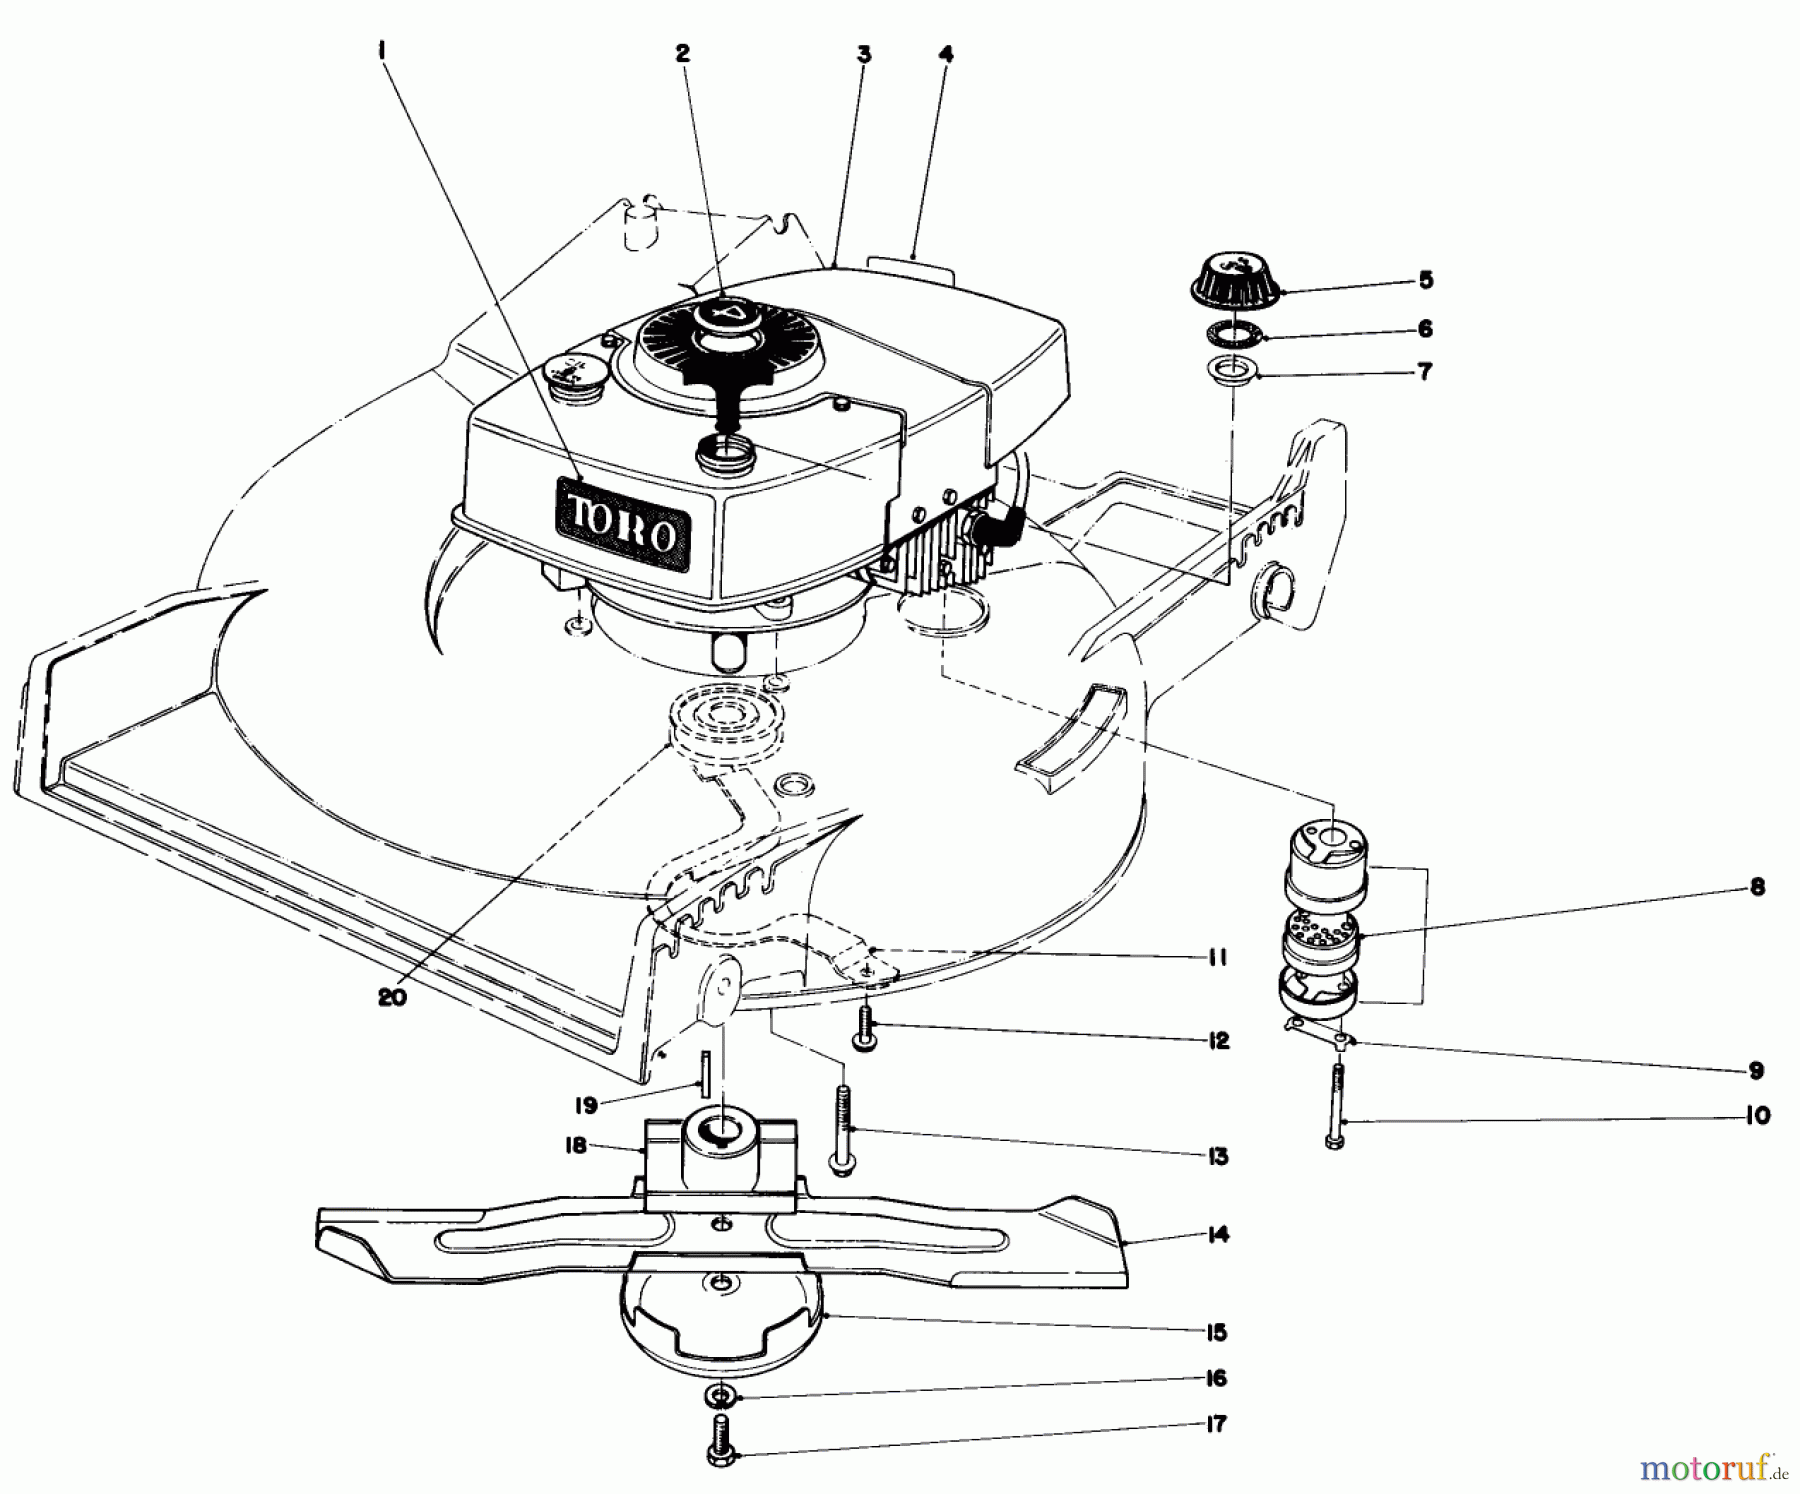  Toro Neu Mowers, Walk-Behind Seite 1 20775 - Toro Lawnmower, 1982 (2000001-2999999) ENGINE ASSEMBLY